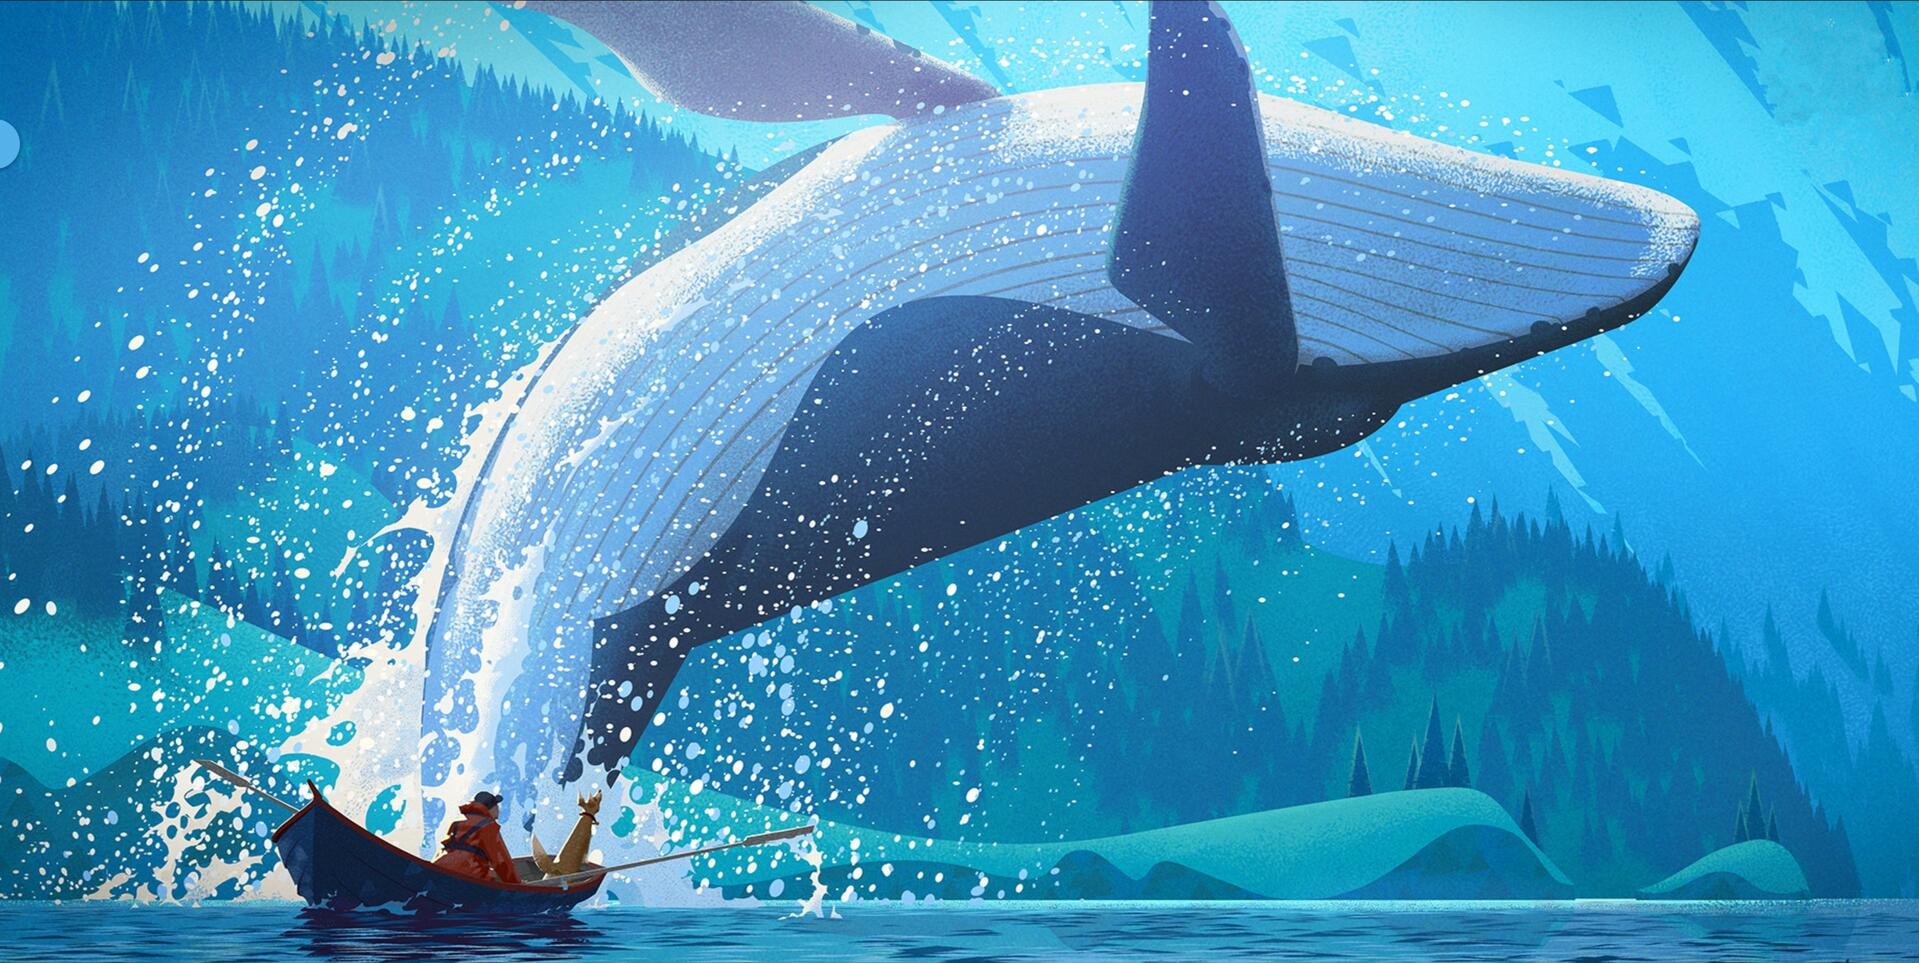 须鲸鲸鱼跳跃出水面挂画壁画无框画装饰画6030尺寸两幅九折包邮